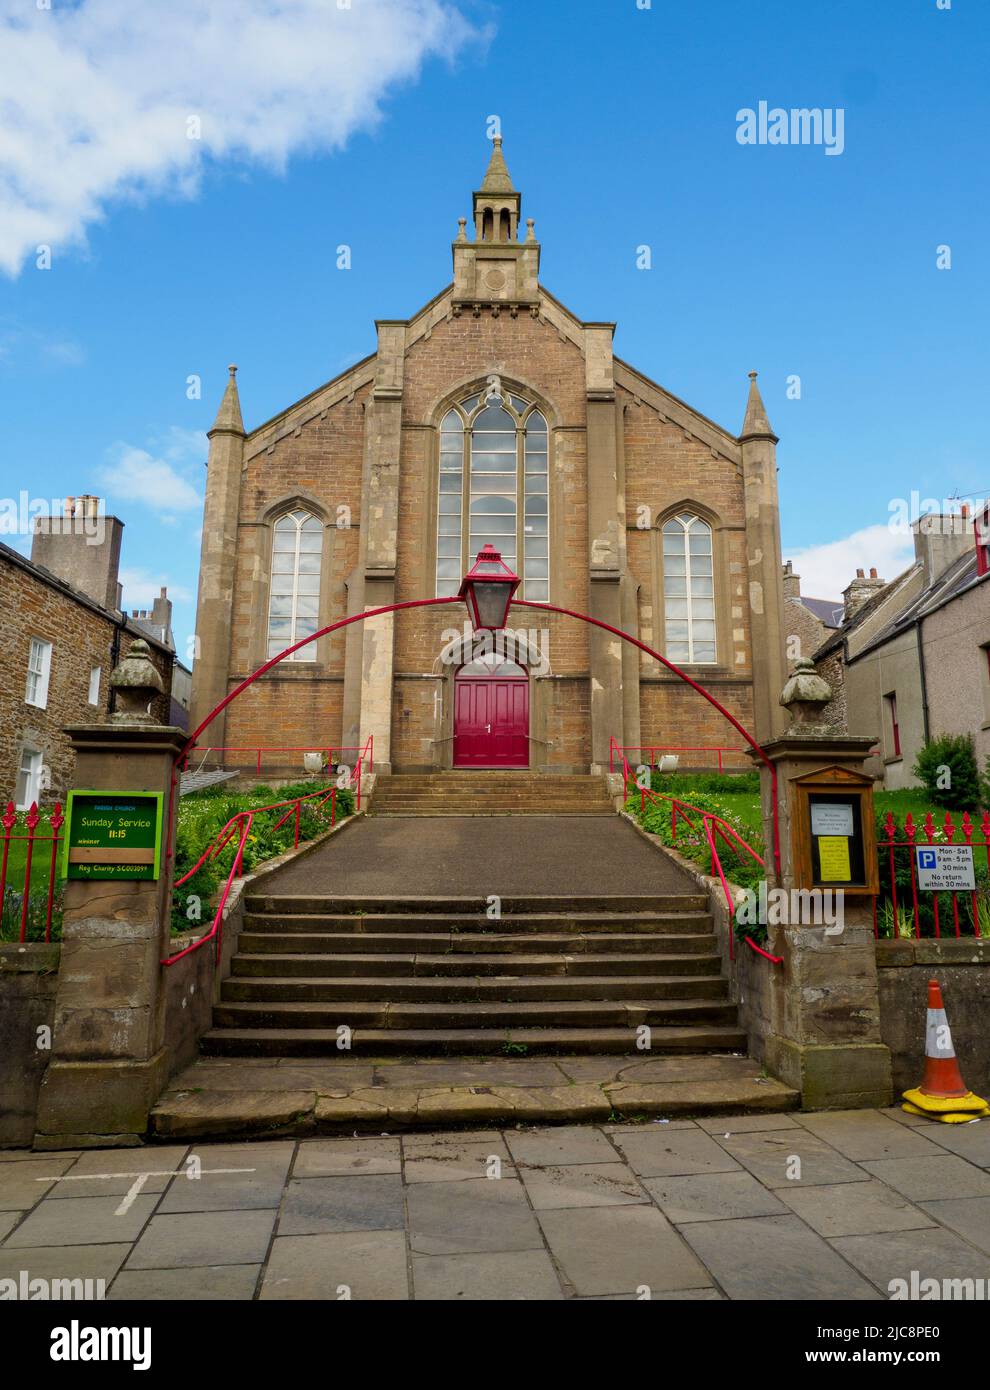 La chiesa parrocchiale di Stromness, chiesa di denominazione della Scozia, è situata nella città di Stromness sulle isole Orkney, Scozia. Foto Stock